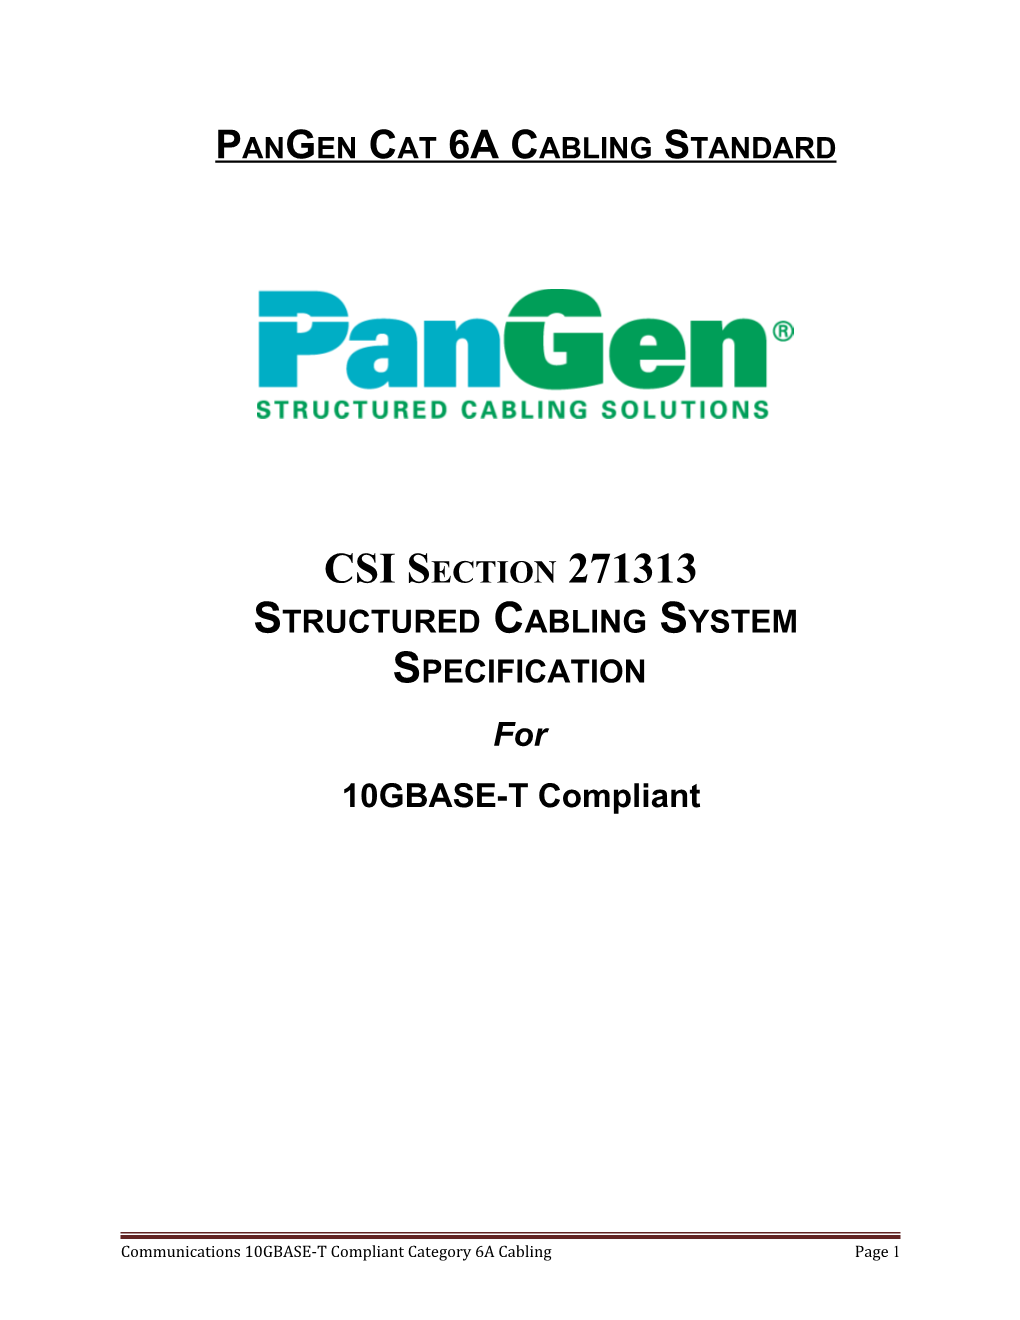 Pangen Cat 6A Cabling Standard